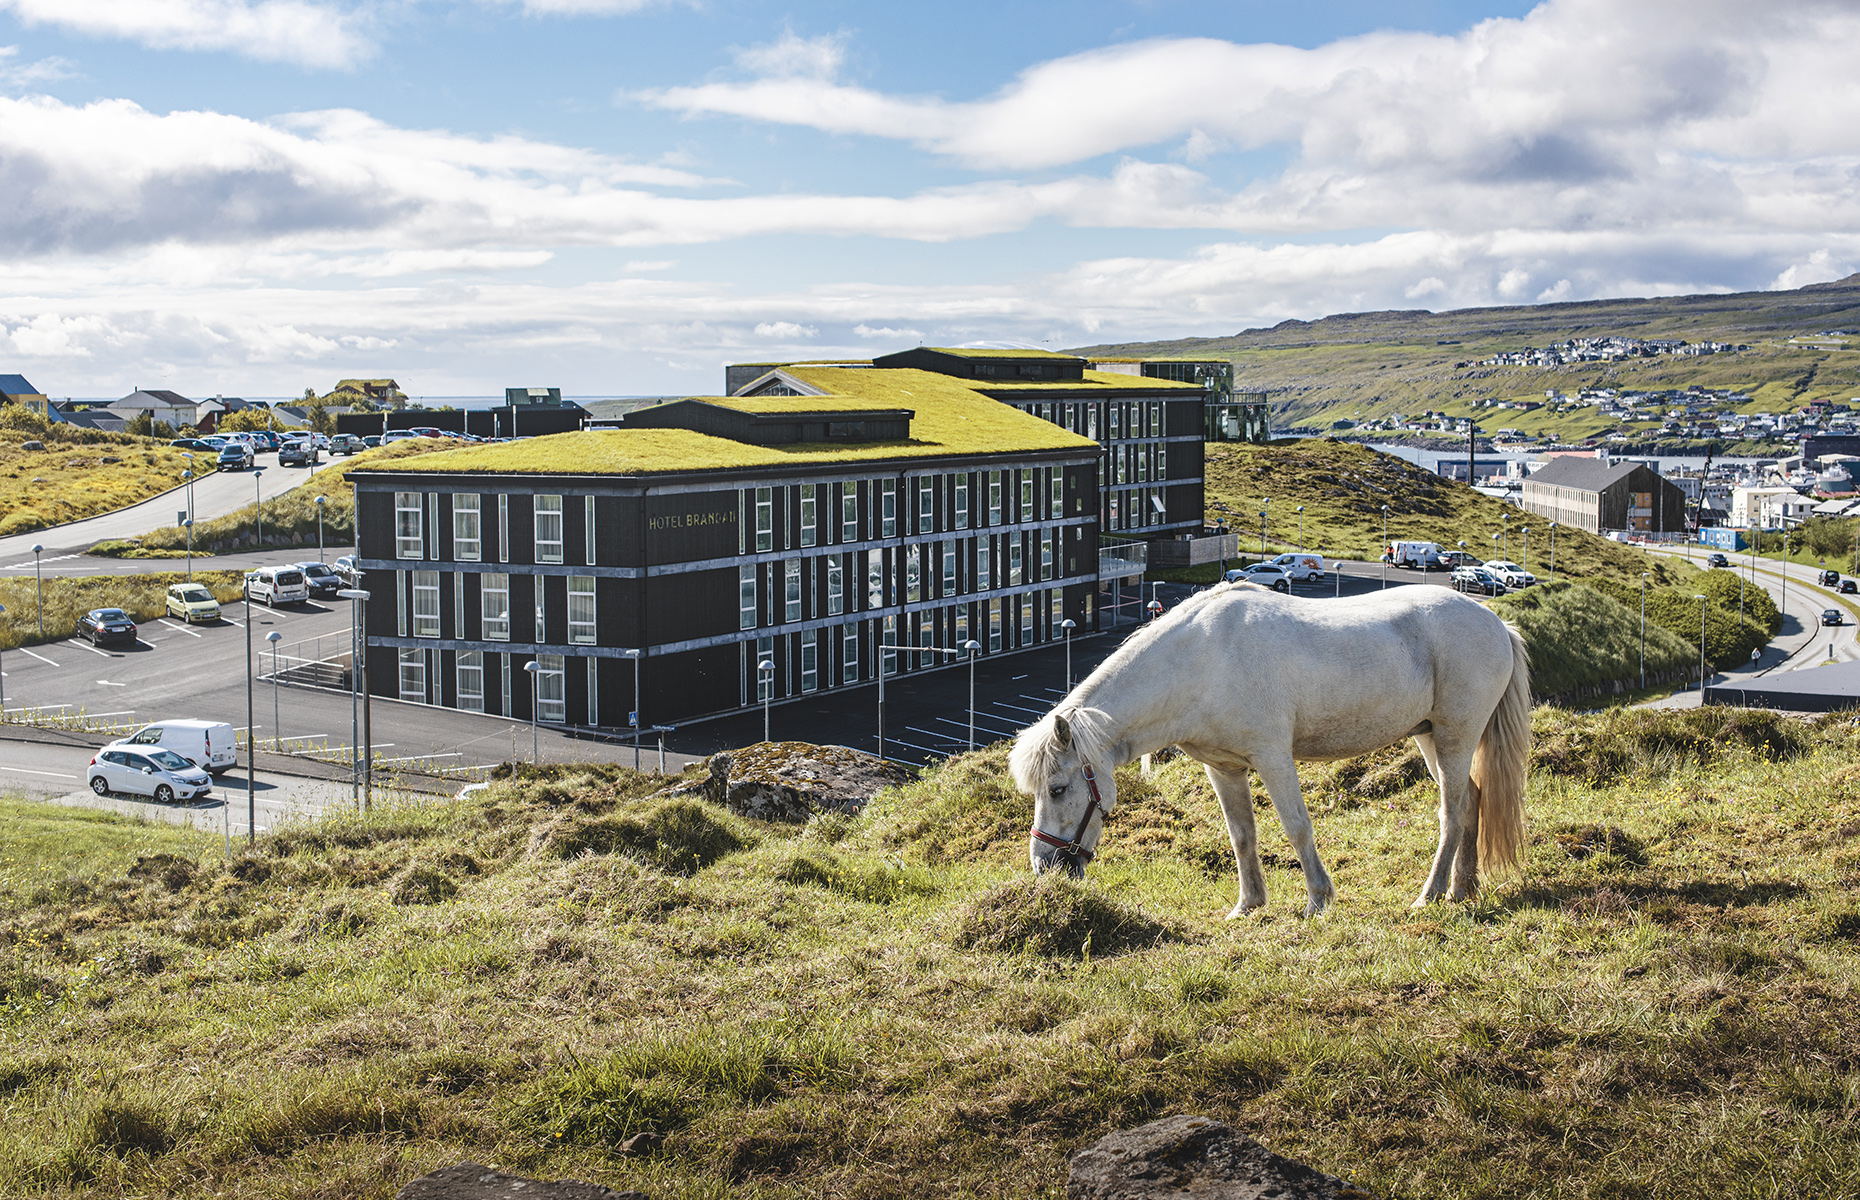 Hotel Brandan, Faroe Islands. (Image: Hotel Brandan)